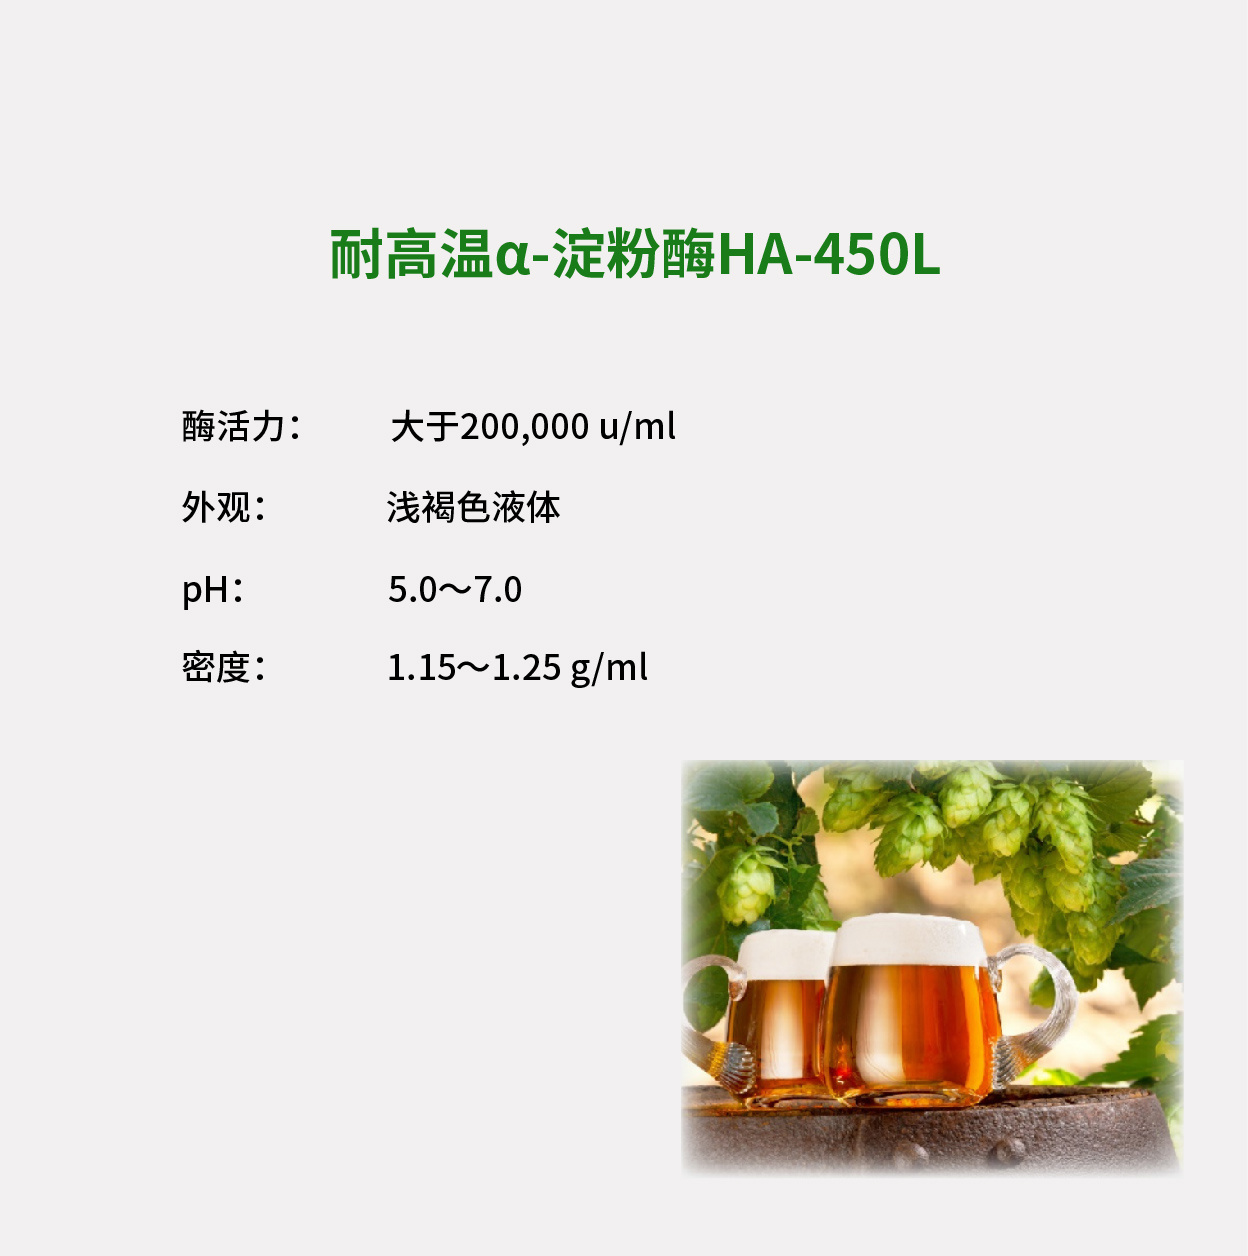 高效α-淀粉酶HA-450L